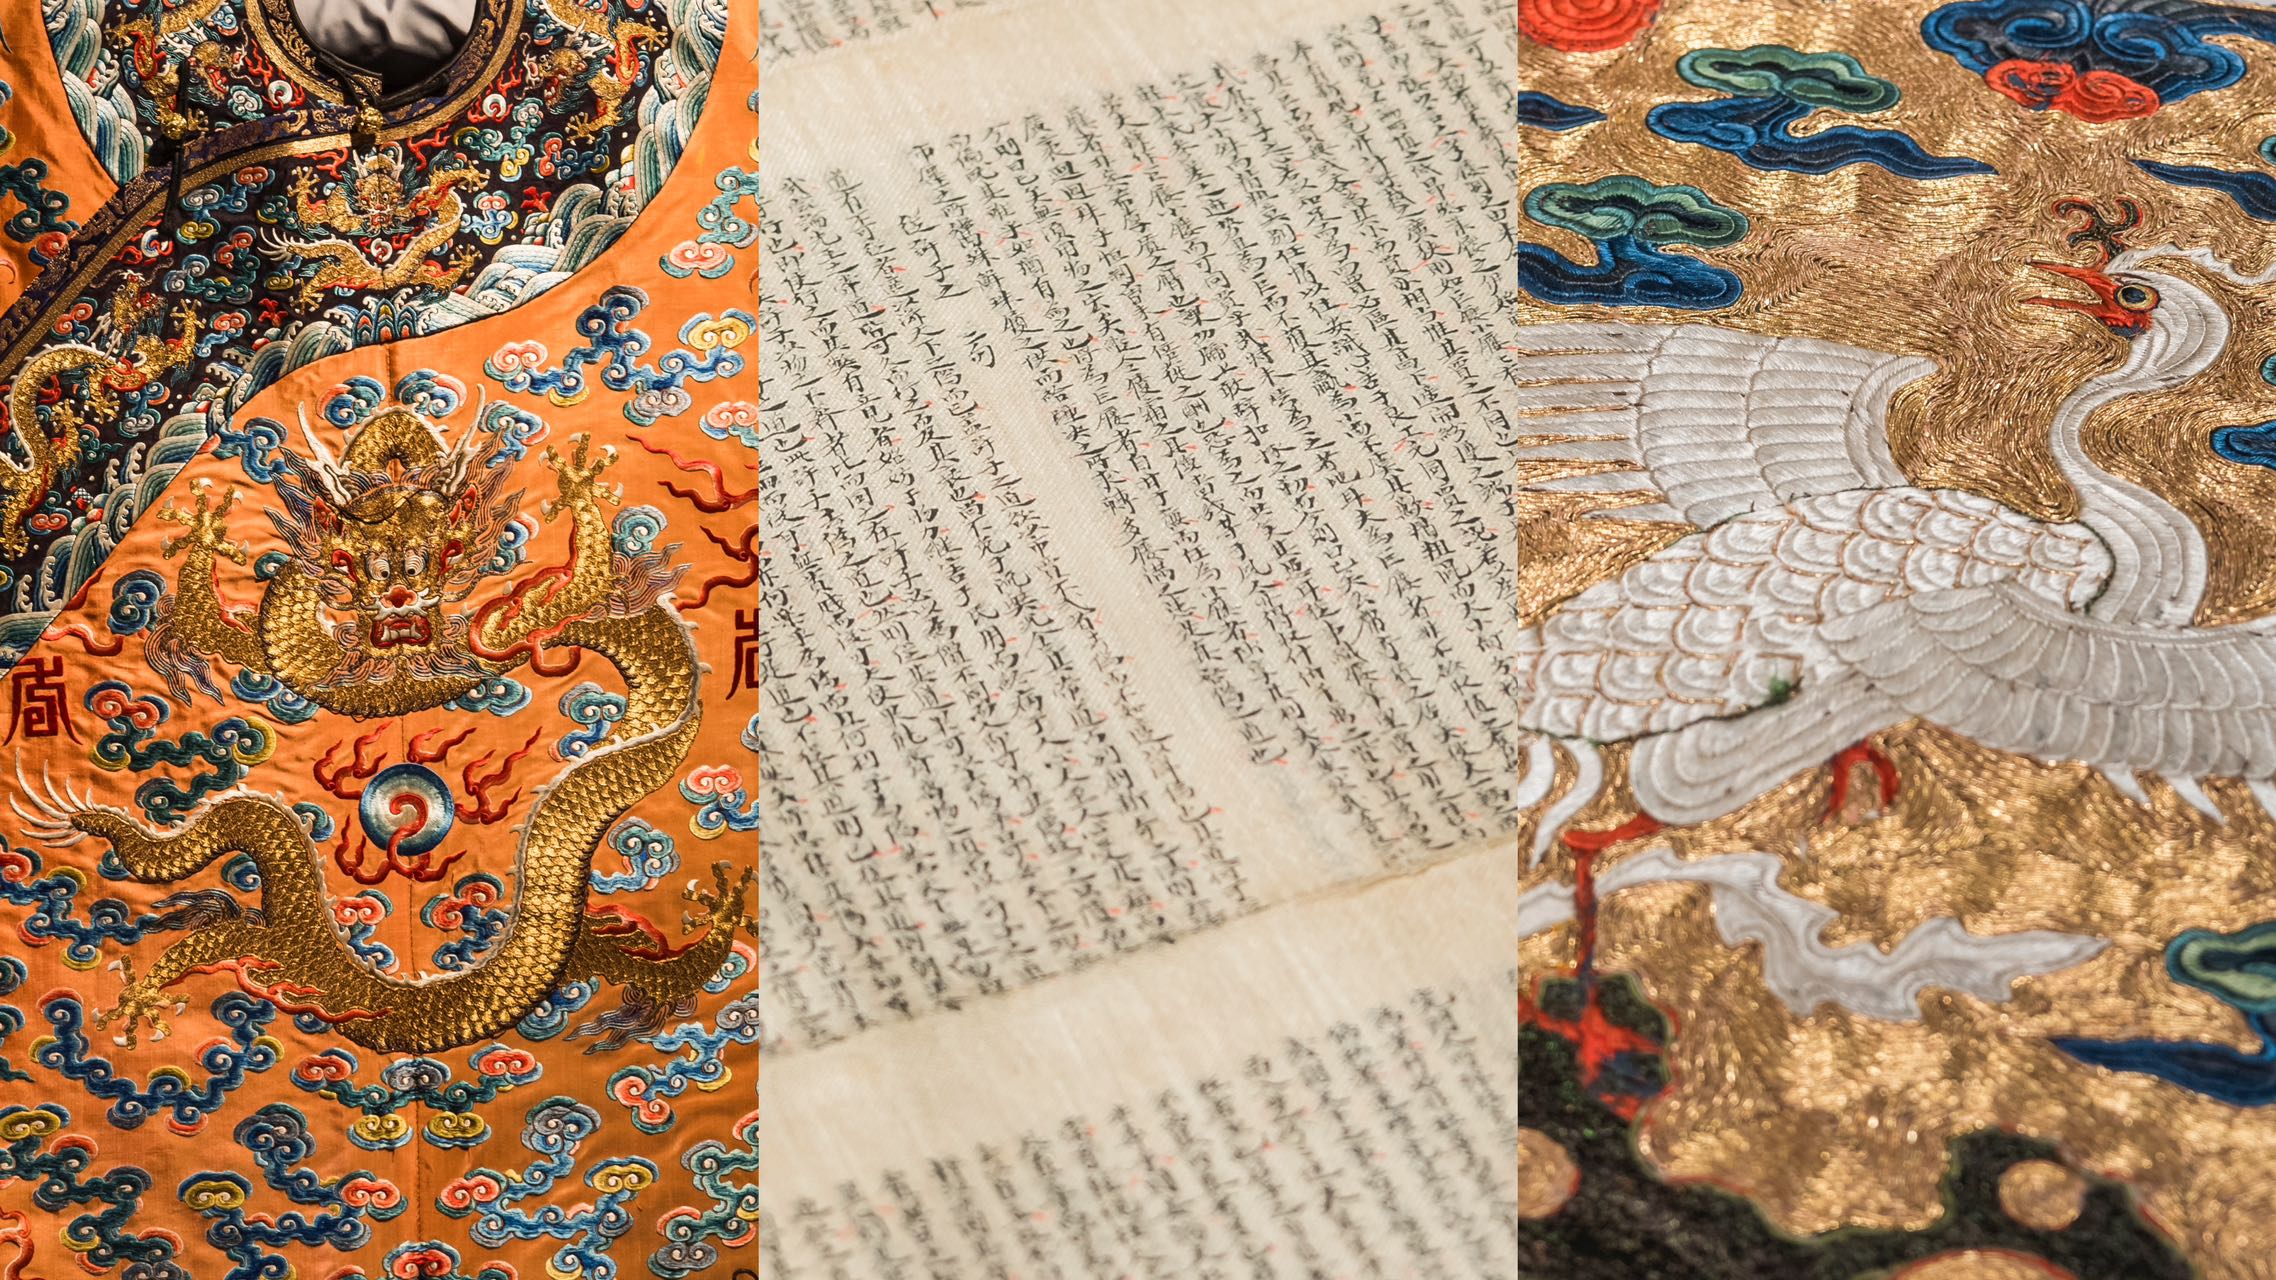 看展覽｜探究絲綢兩千年奪目奇觀 展覽「絲織繁華」展出150件珍貴絲織文物